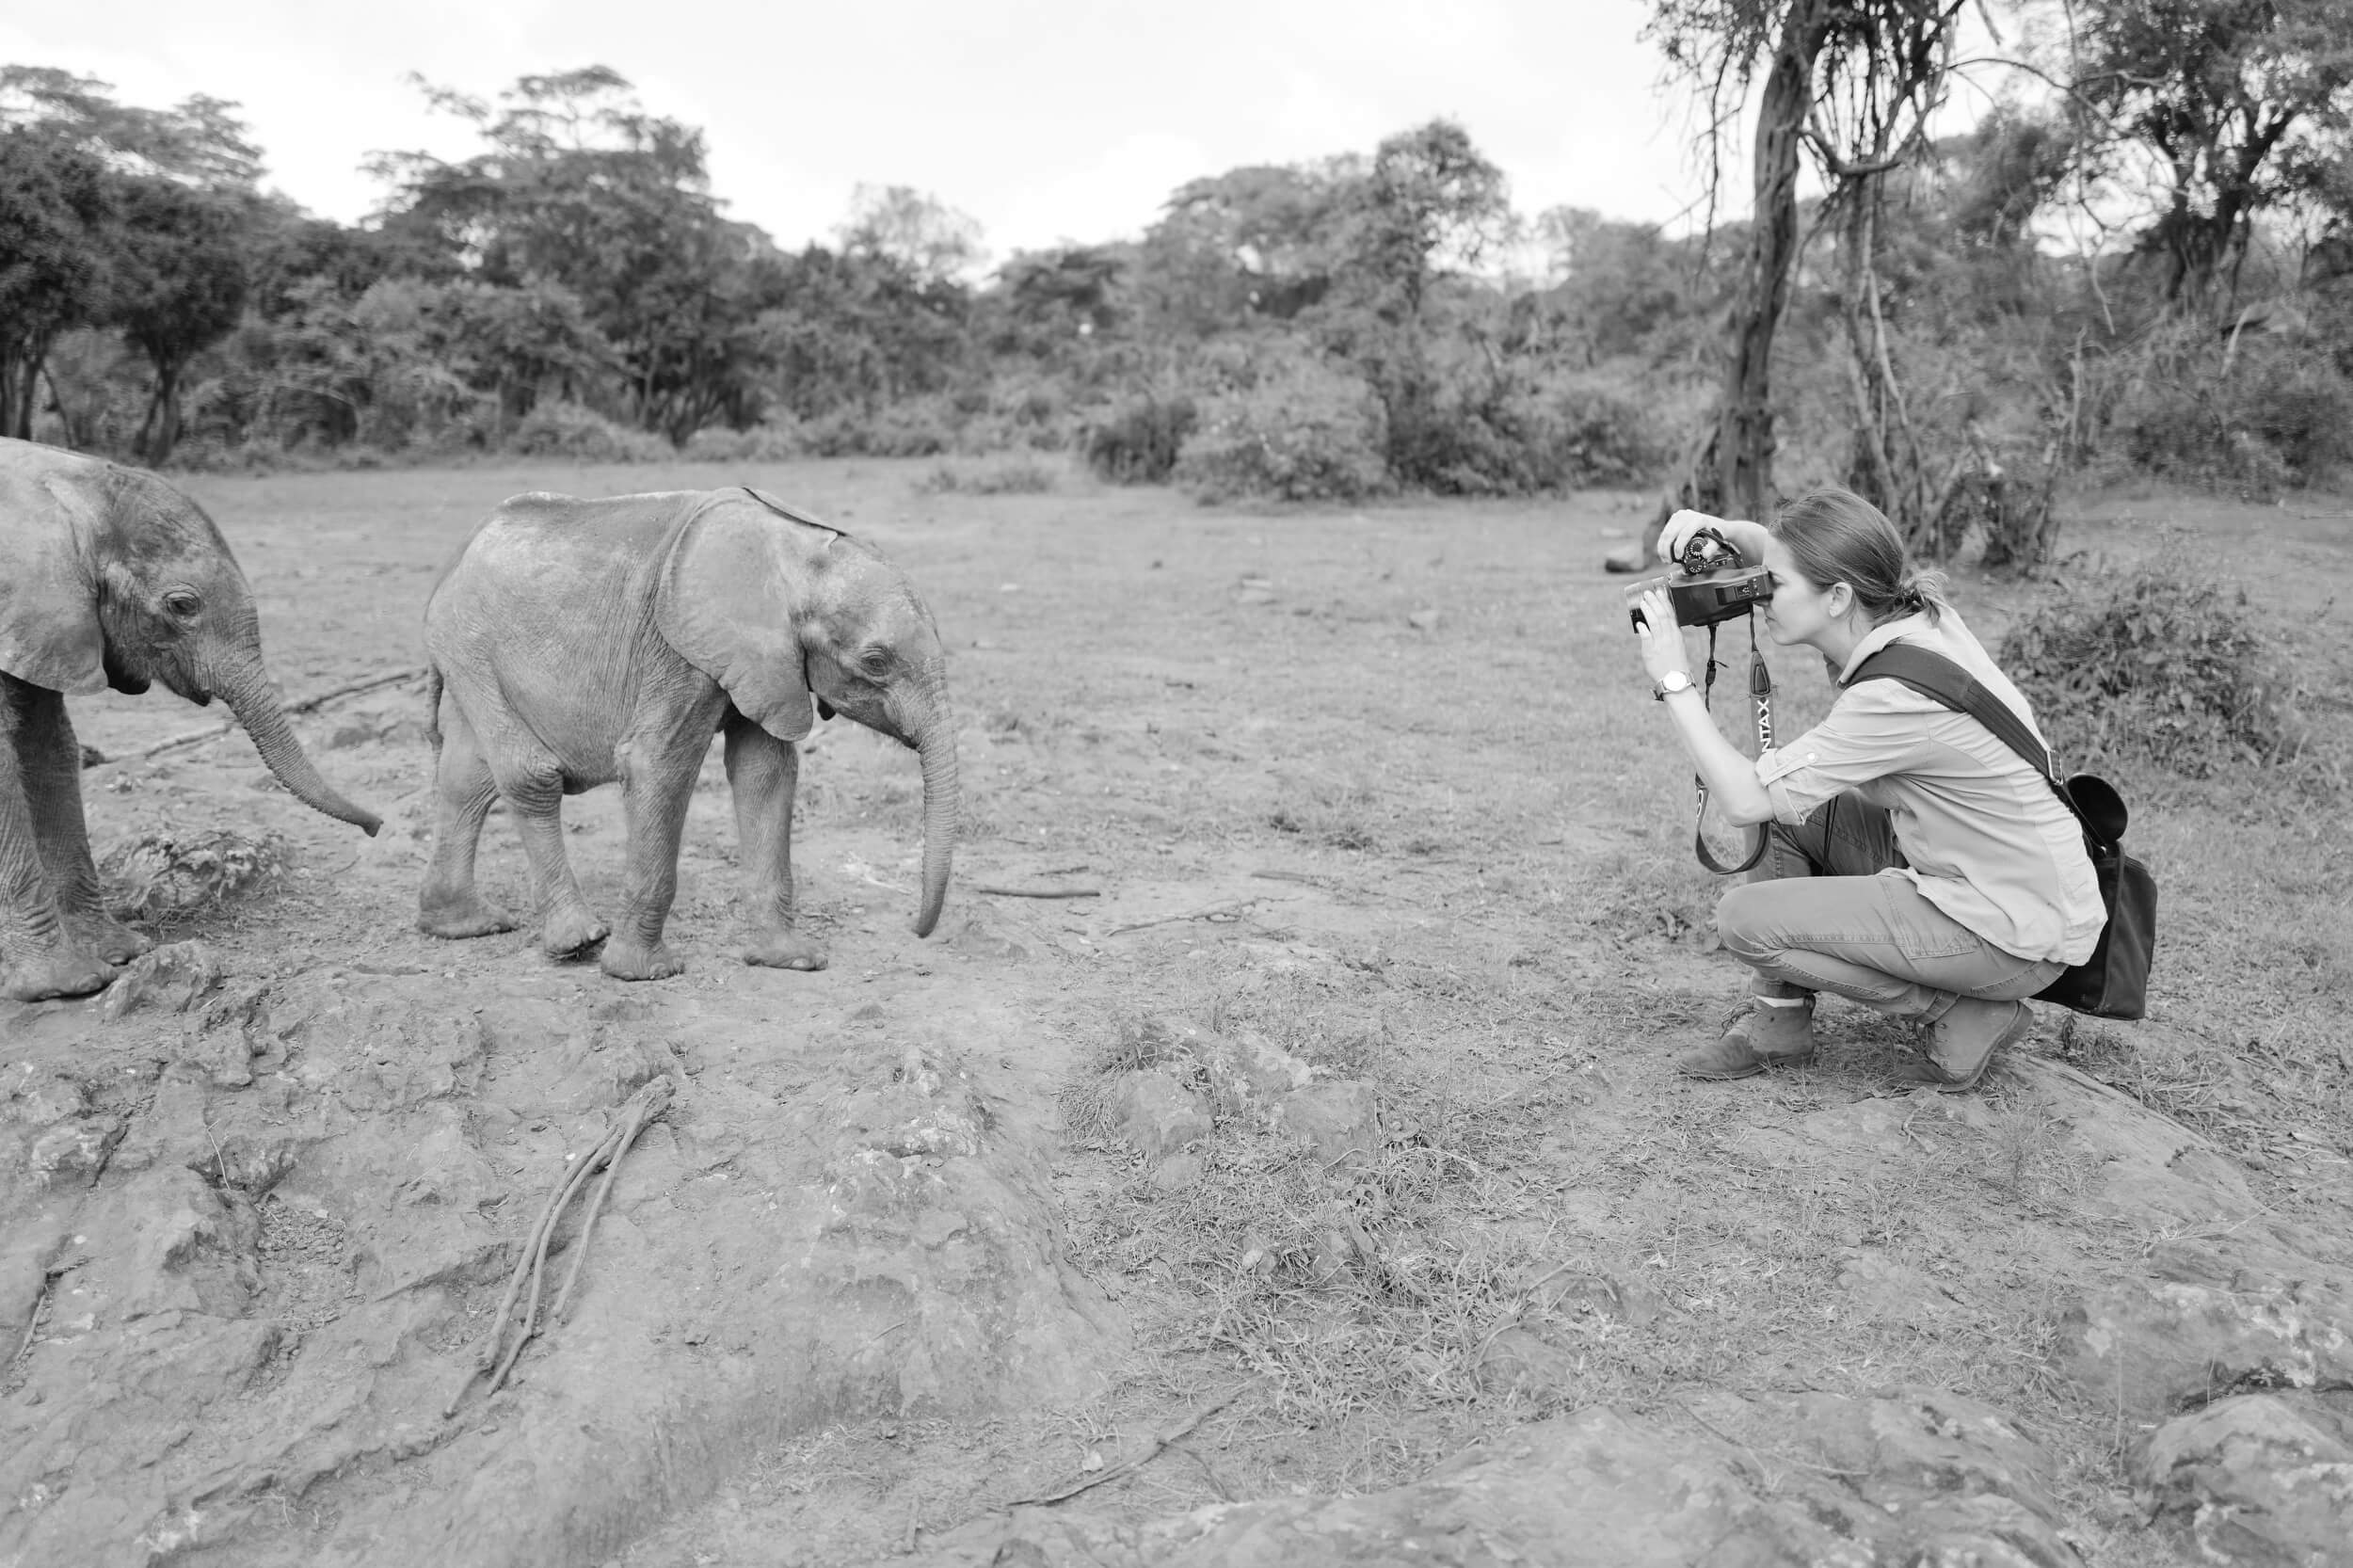 KT Merry photographs baby elephants